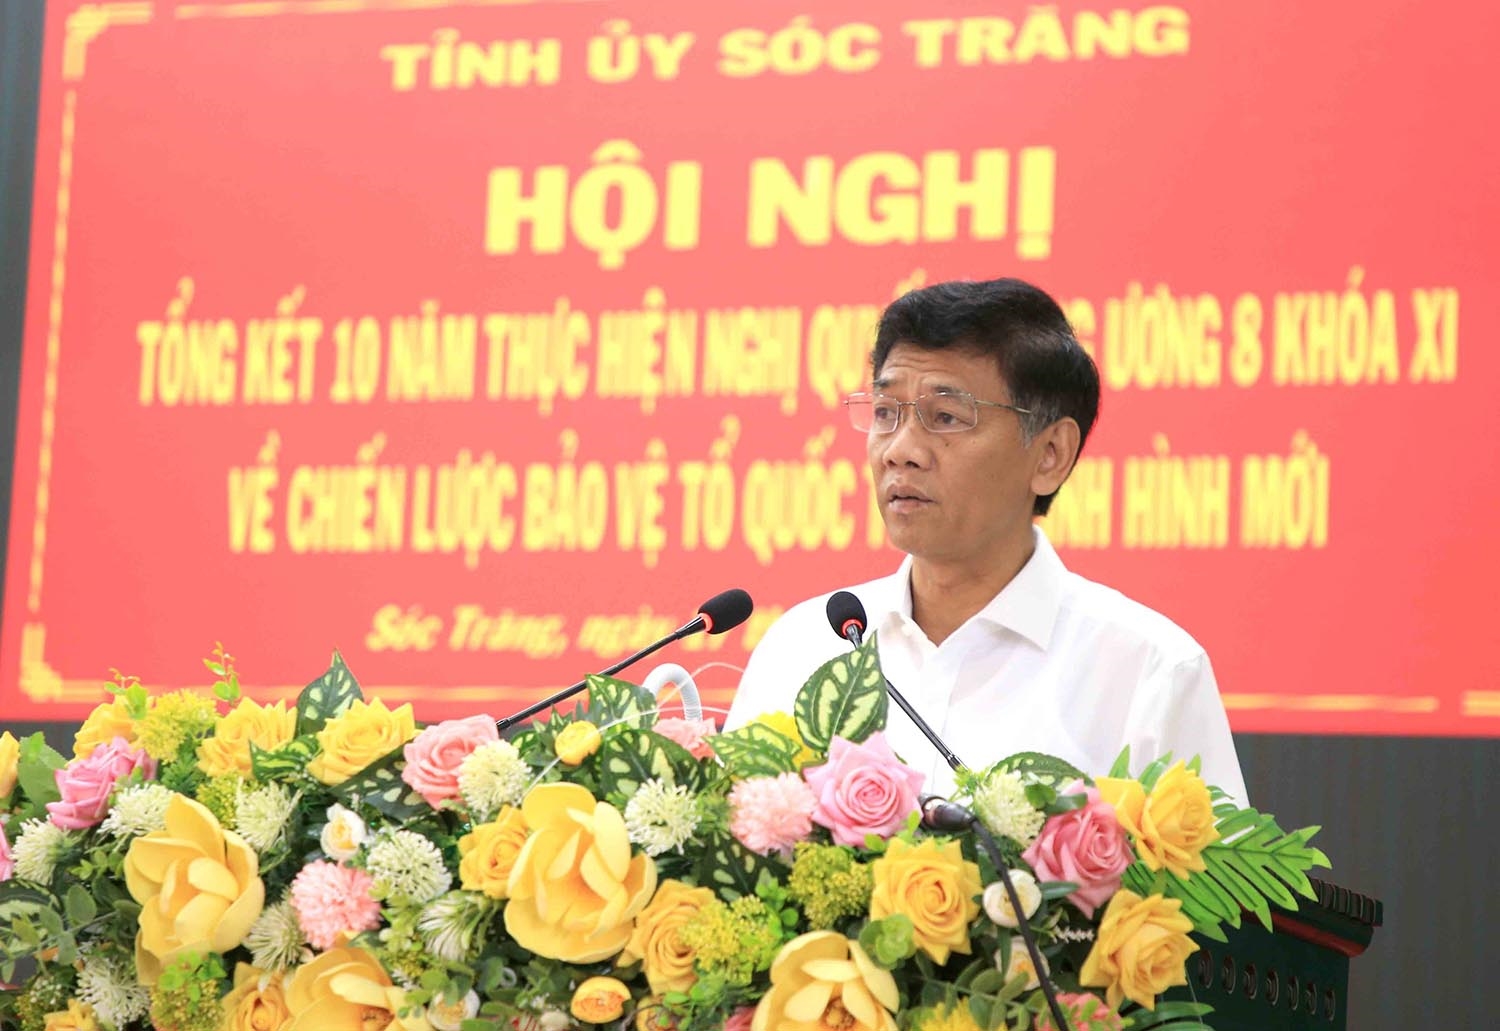 Ủy viên Trung ương Đảng, Bí thư Tỉnh ủy Sóc Trăng Lâm Văn Mẫn phát biểu tiếp thu lĩnh hội ý kiến chỉ đạo tại Hội nghị 